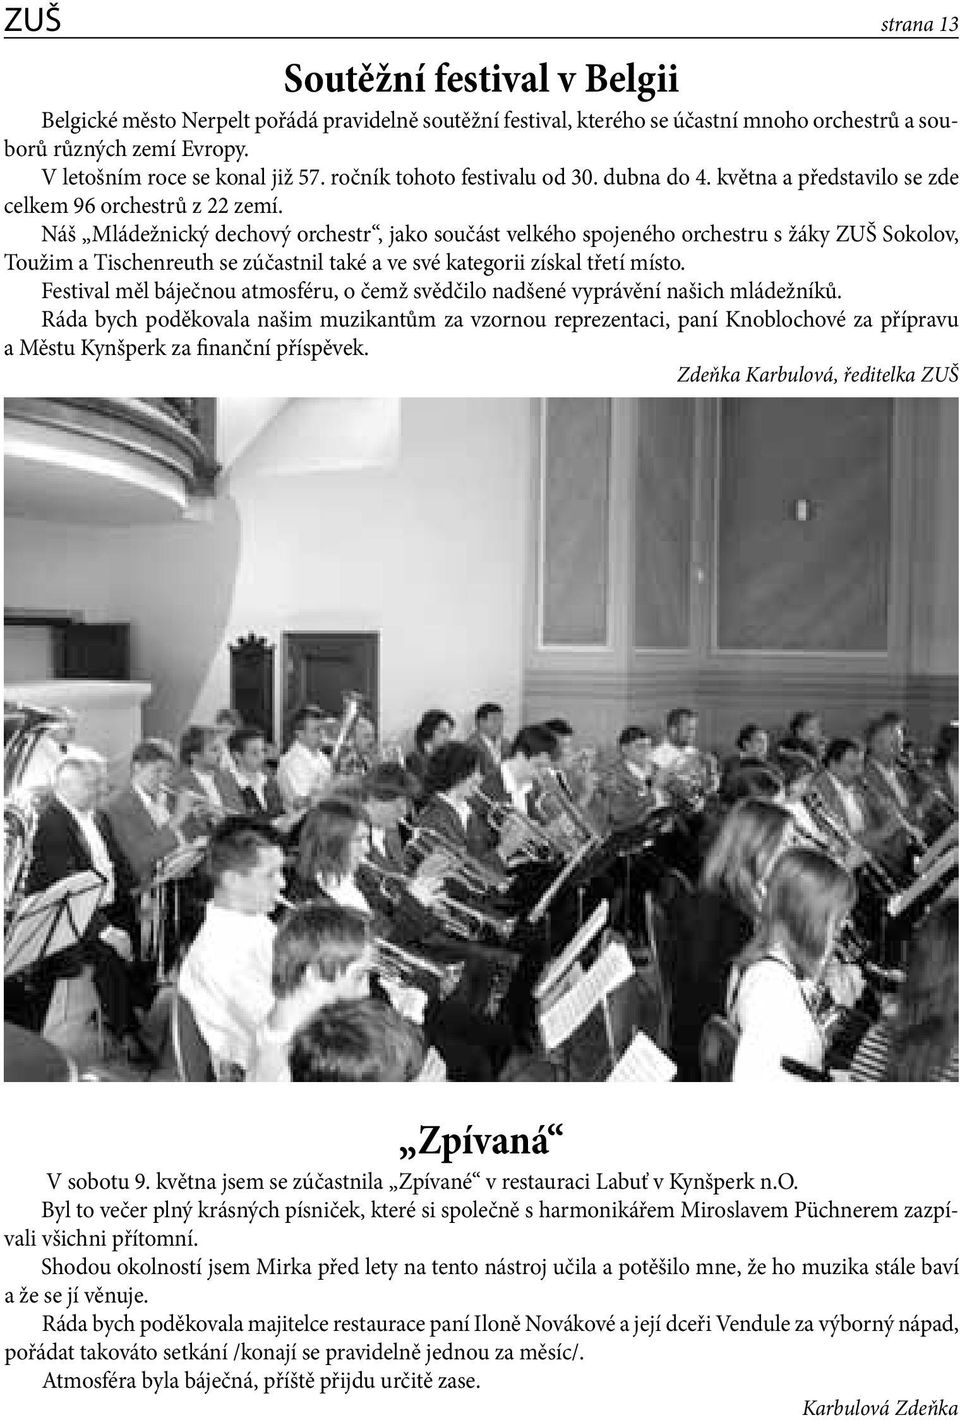 Náš Mládežnický dechový orchestr, jako součást velkého spojeného orchestru s žáky ZUŠ Sokolov, Toužim a Tischenreuth se zúčastnil také a ve své kategorii získal třetí místo.